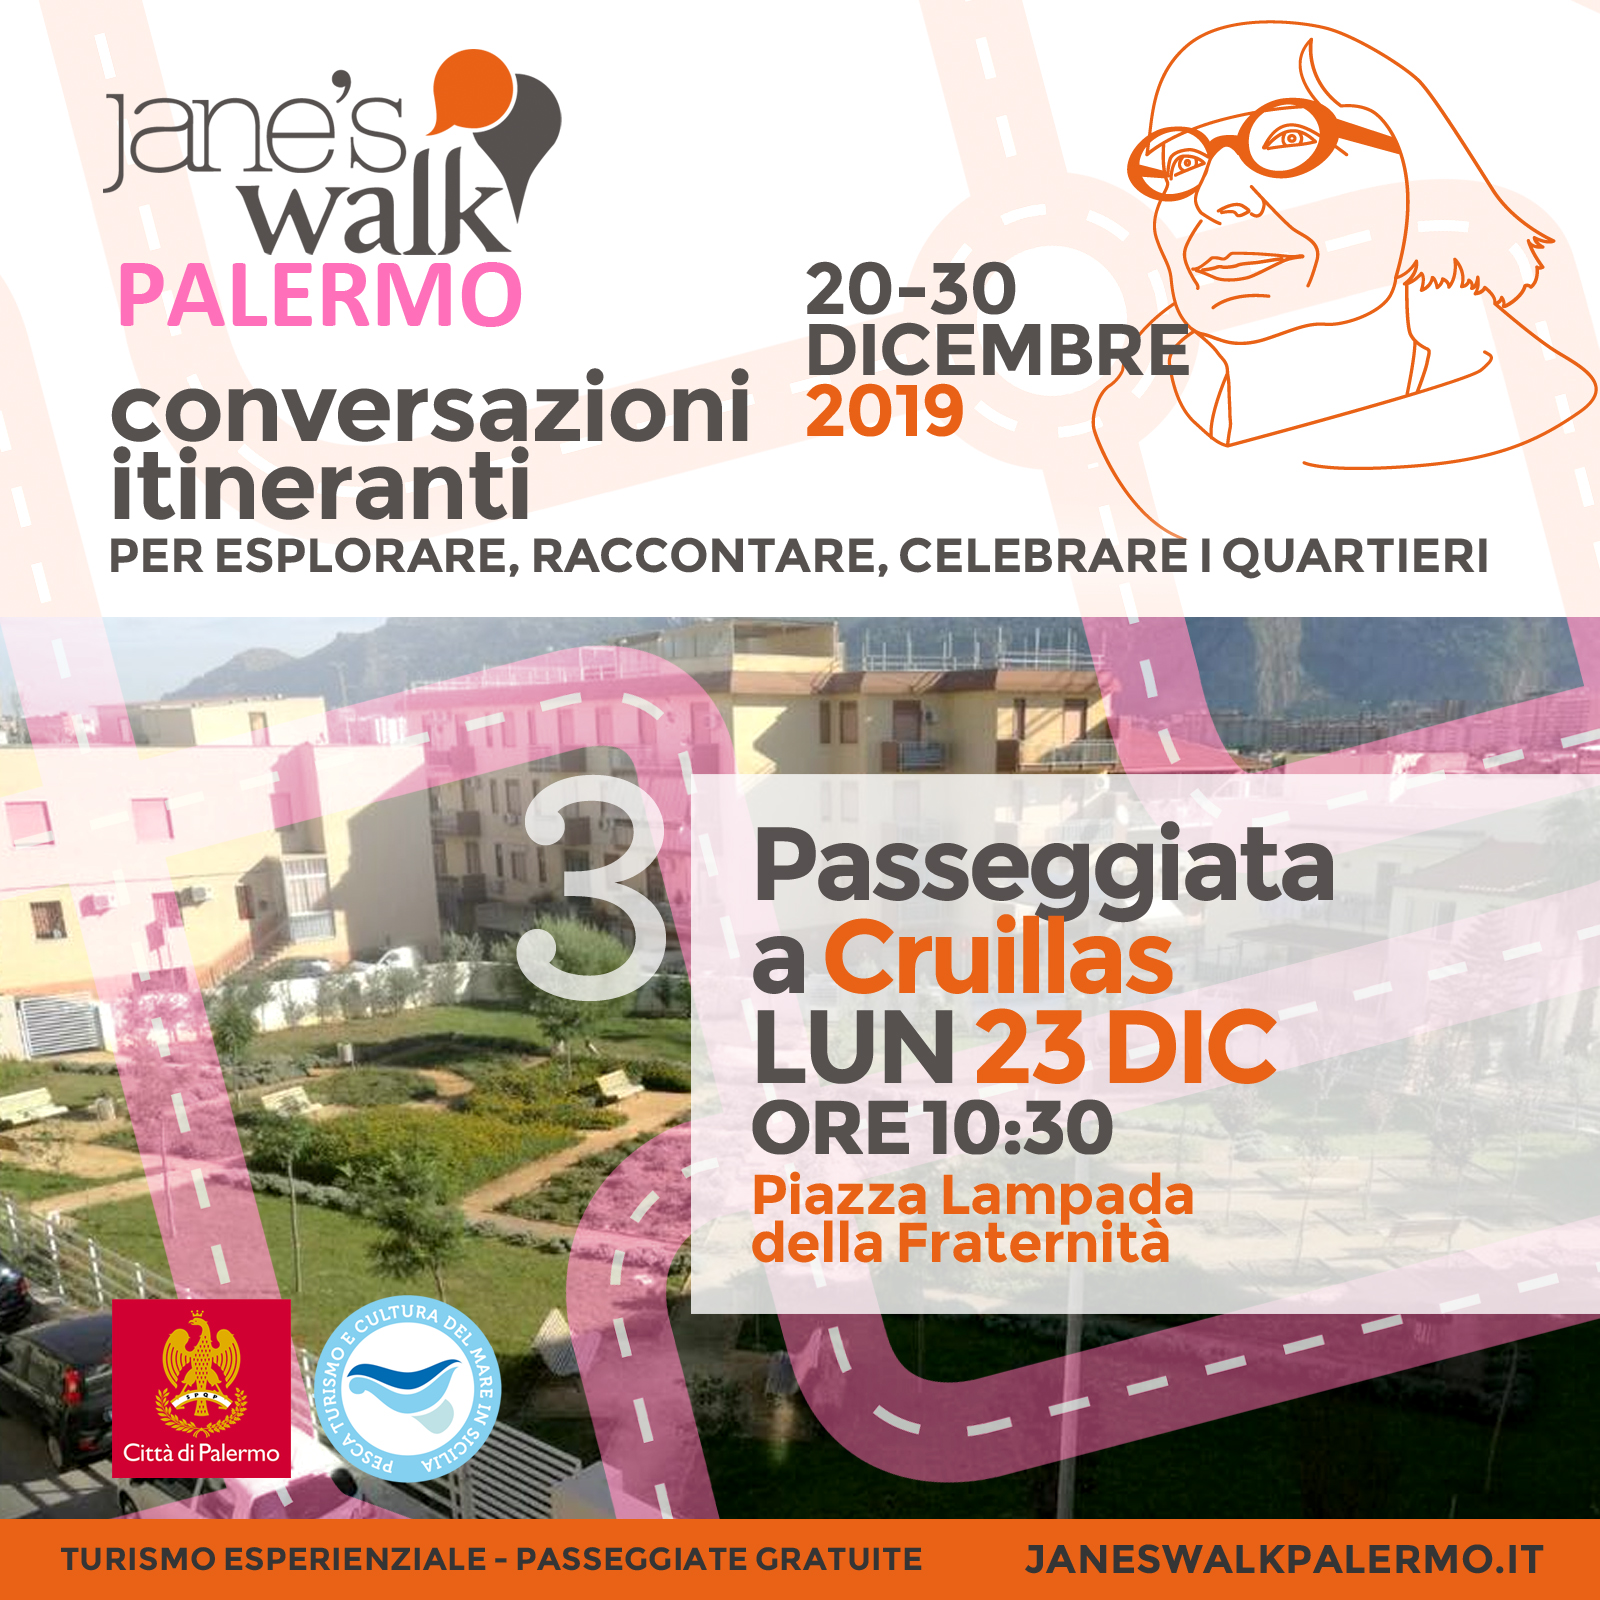 Jane's Walk Palermo - Passeggiata a Cruillas